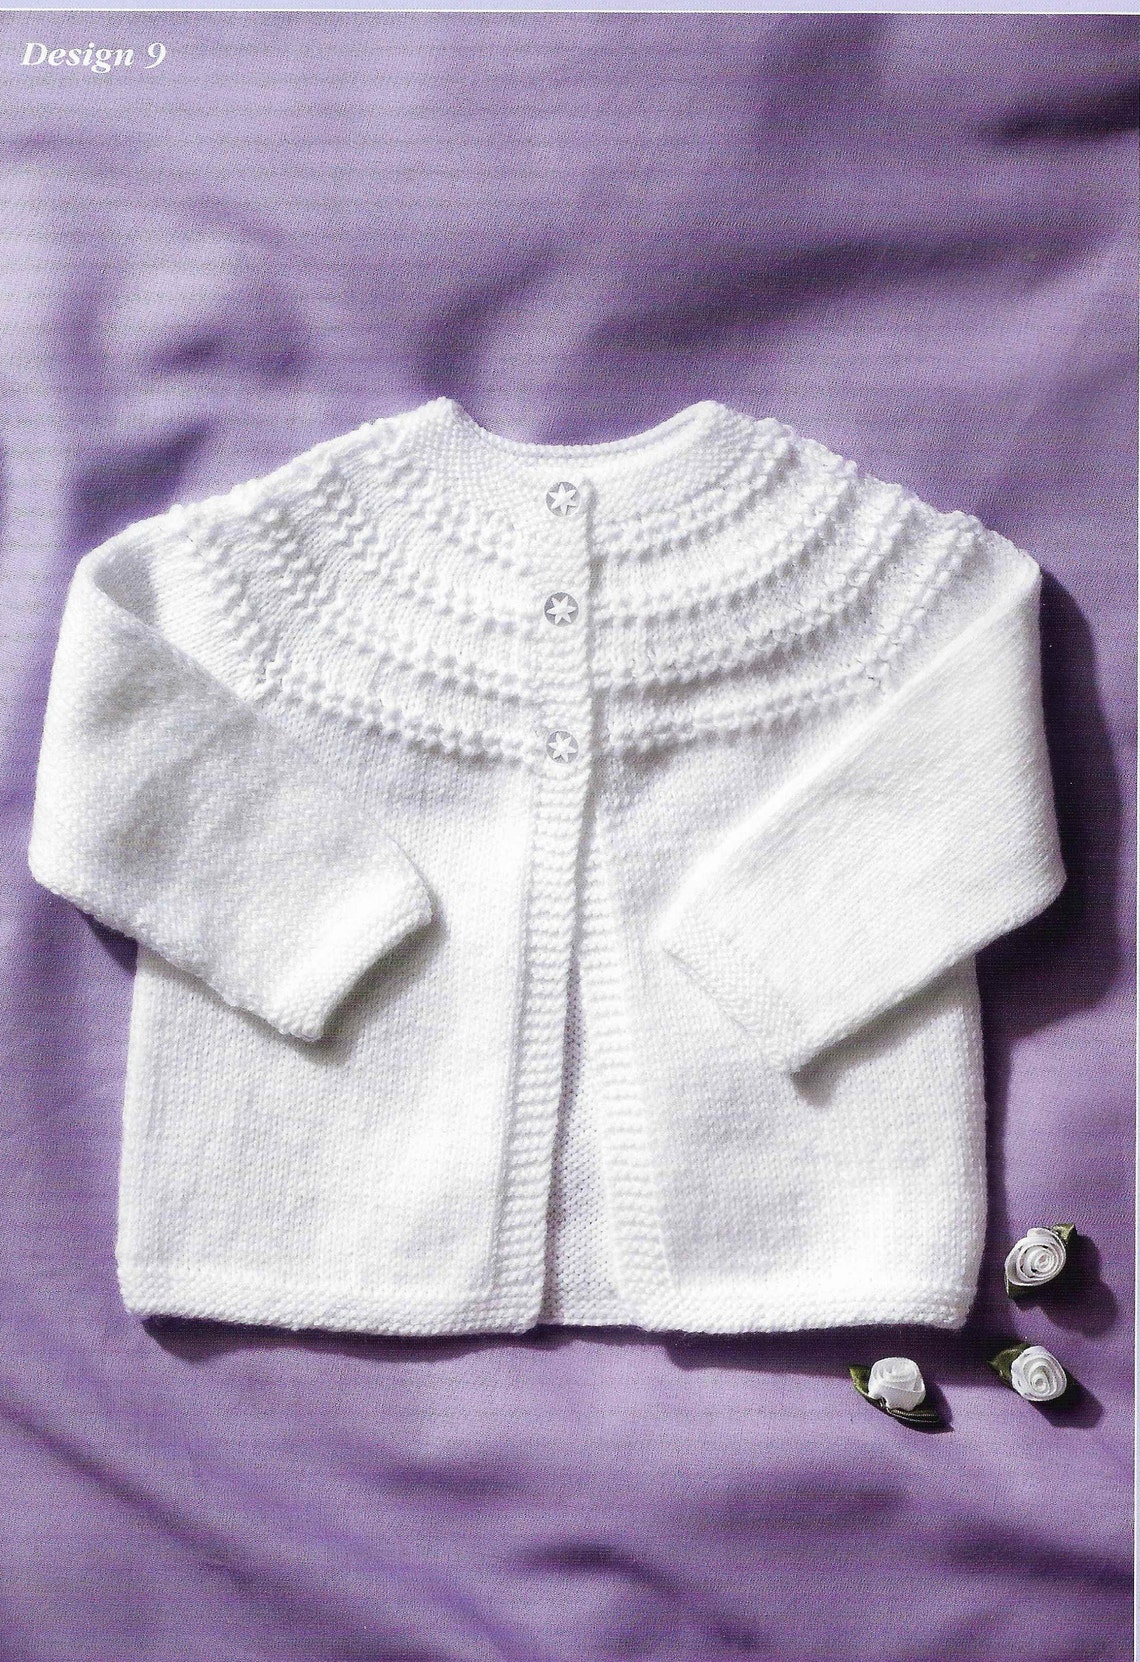 4 Ply Baby Cardigan Knitting Pattern PDF Newborn Crochet - Etsy UK